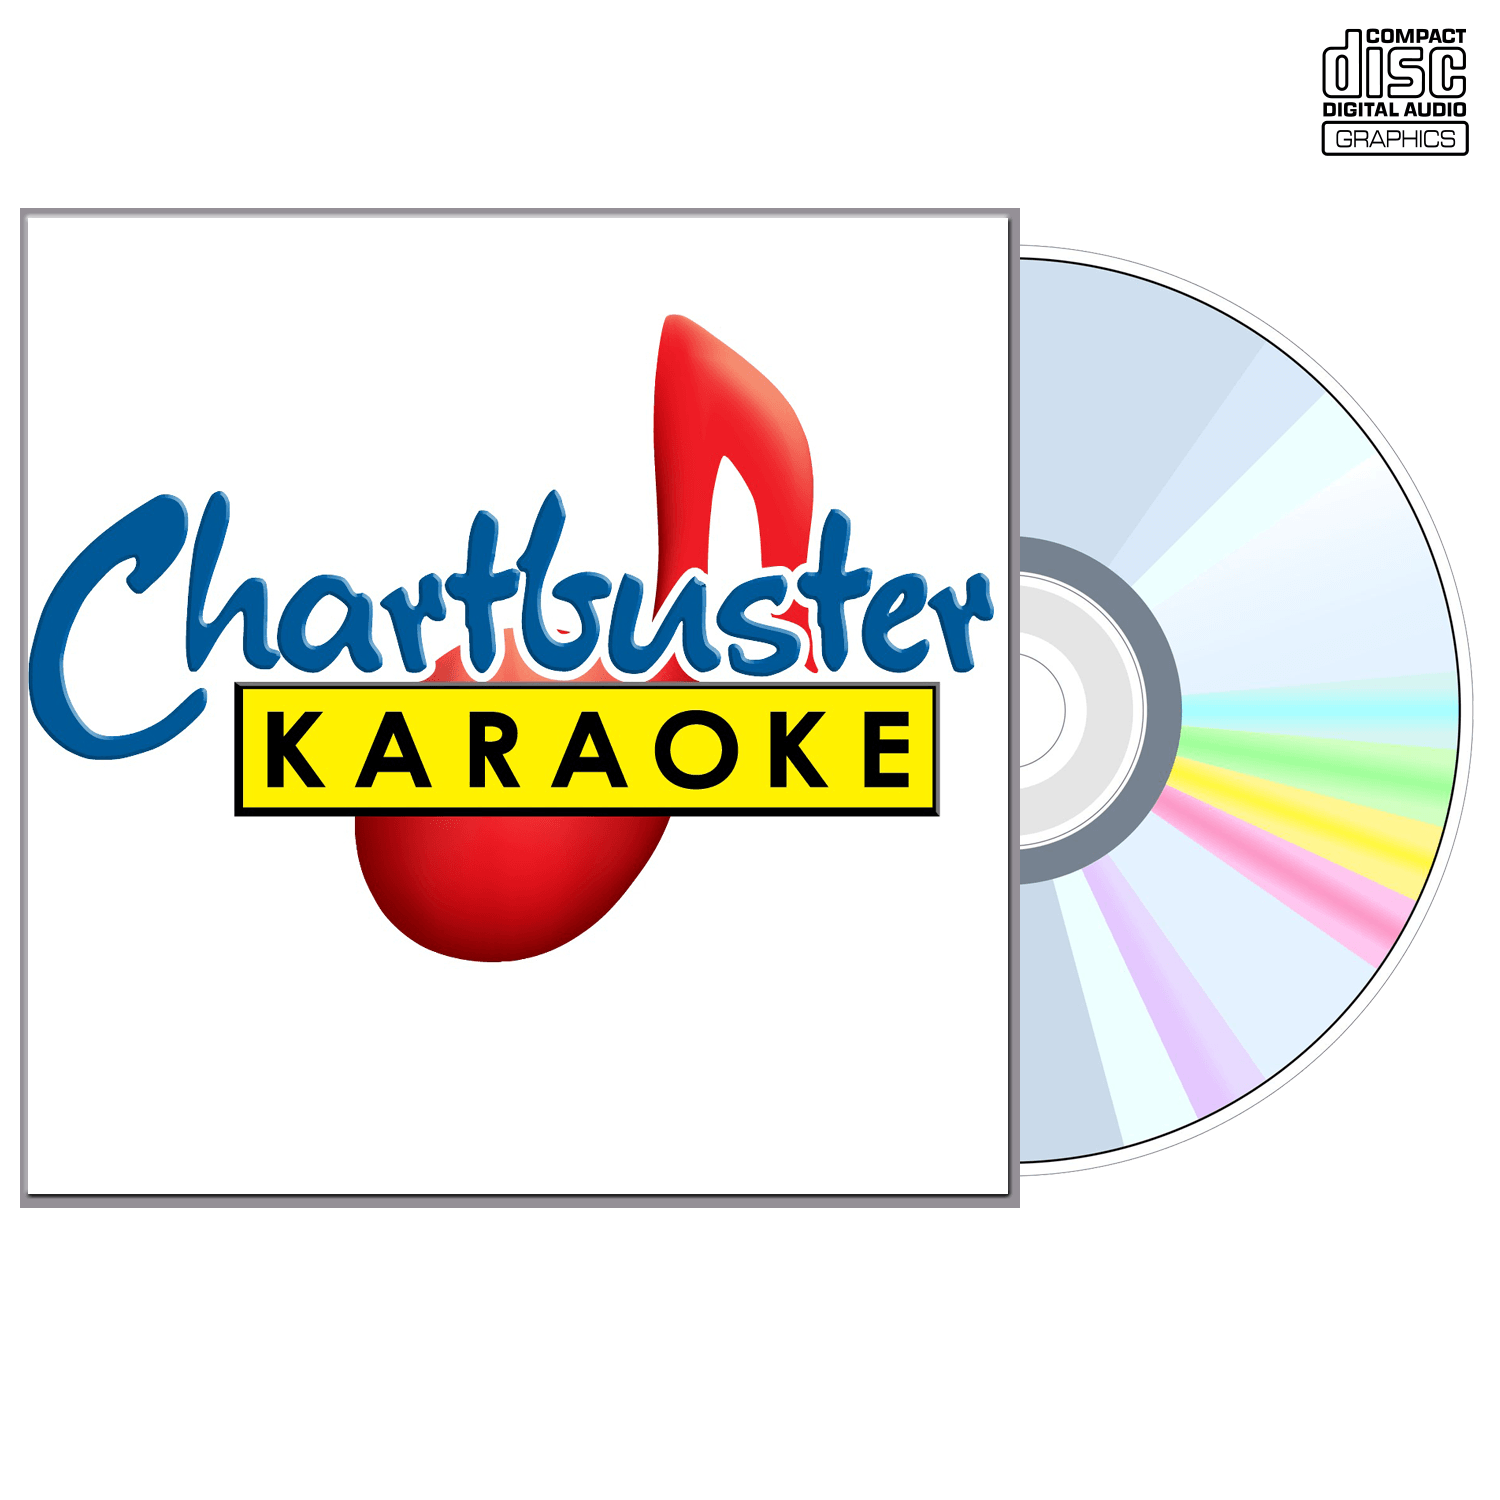 Al Green - CD+G - Chartbuster Karaoke - Karaoke Home Entertainment